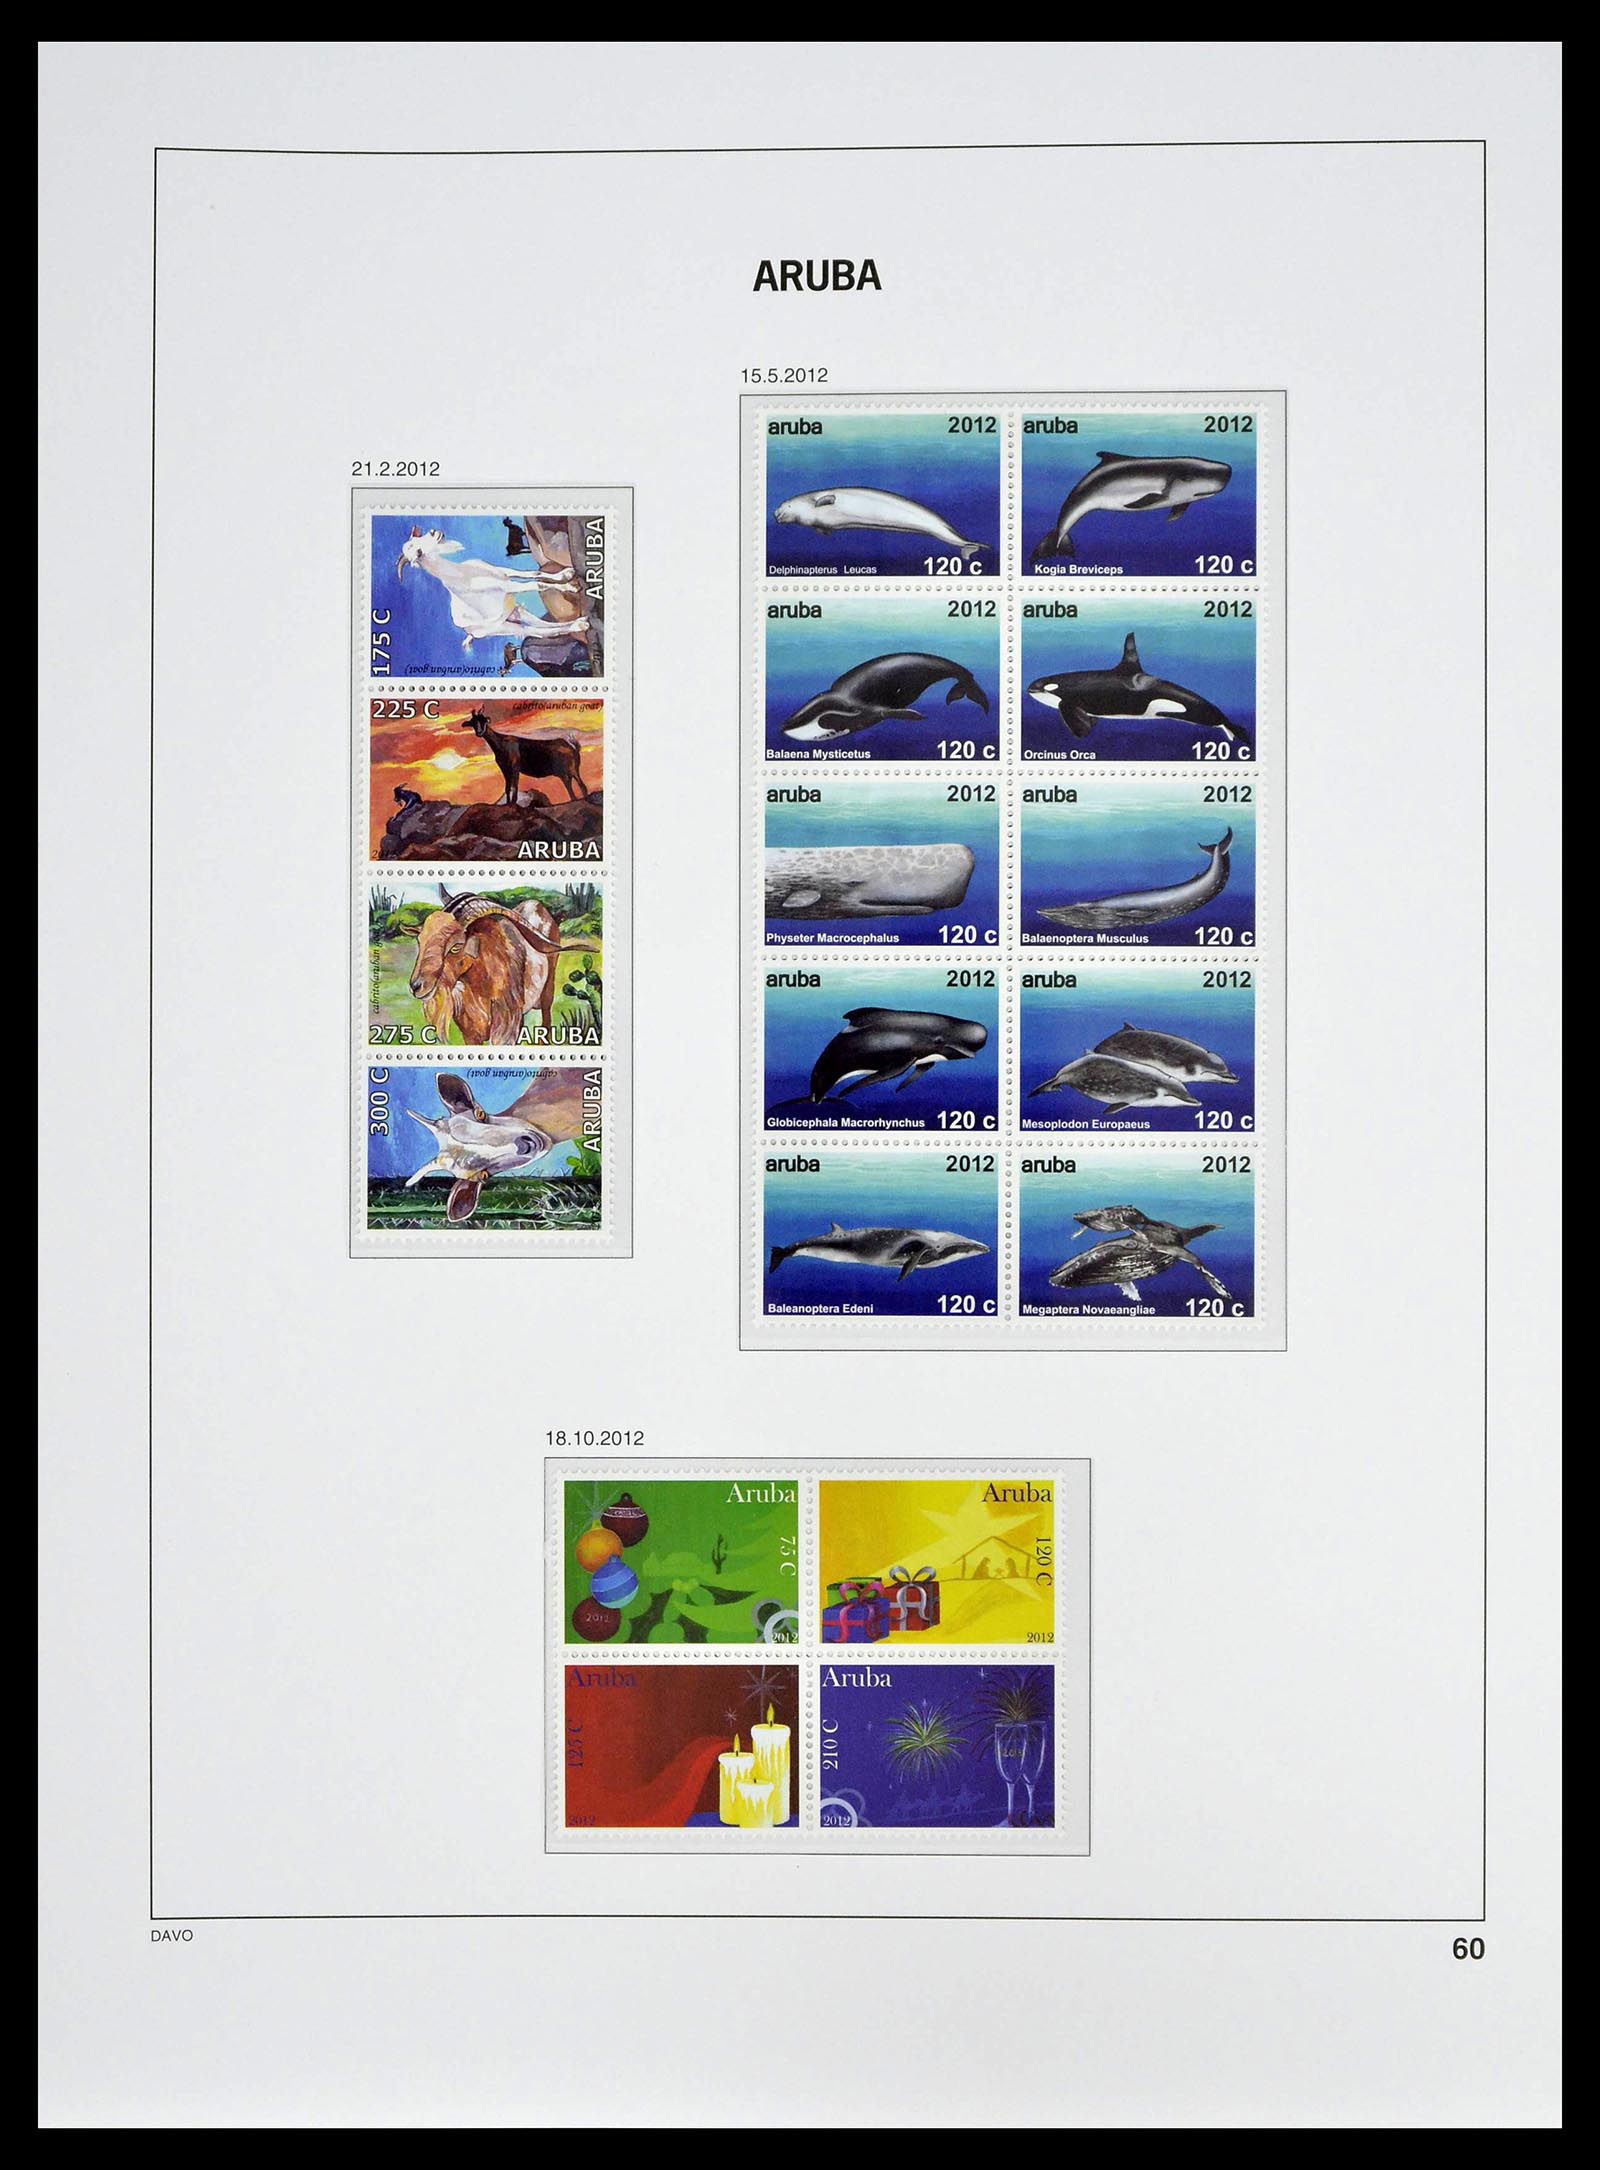 39361 0060 - Stamp collection 39361 Aruba 1986-2013.